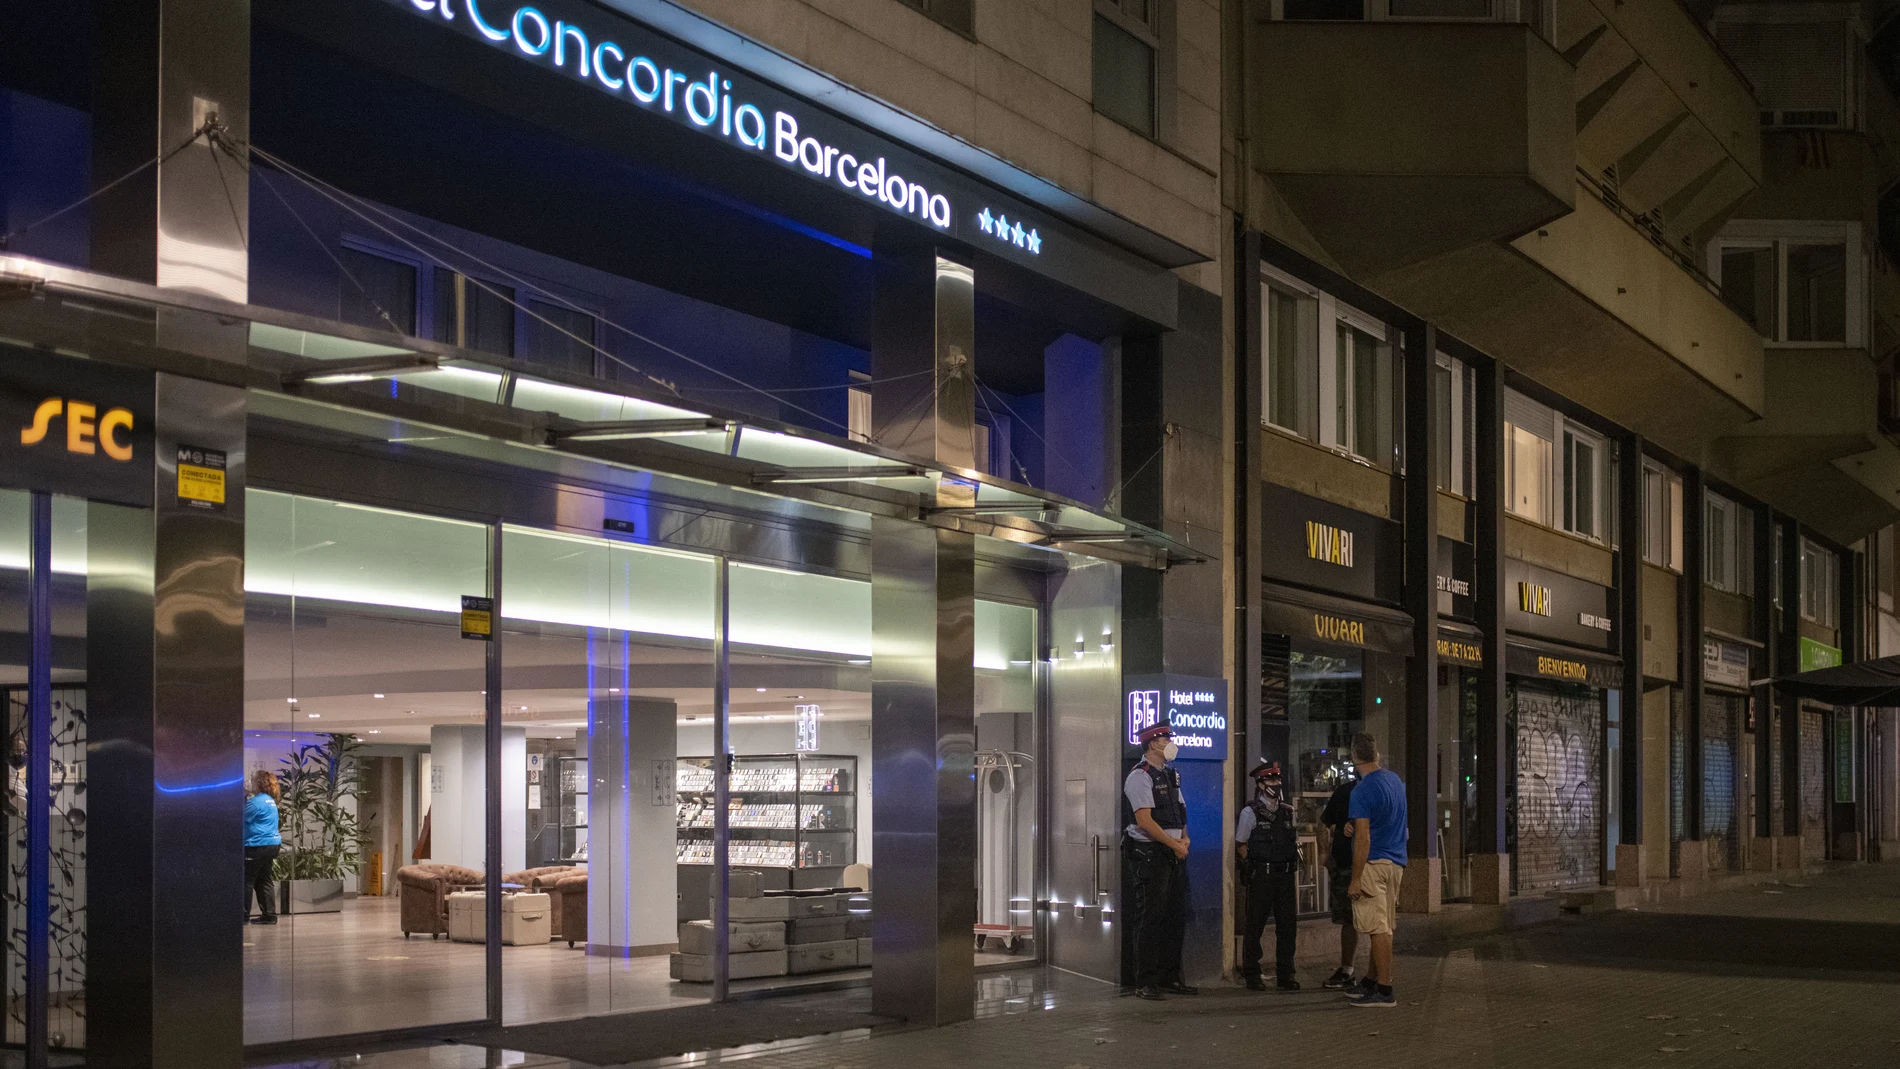 Varios agentes de los Mossos d´Esquadra, en la entrada del Hotel Concordia, a 25 de agosto de 2021, en Barcelona. Lorena Sopêna / Europa Press